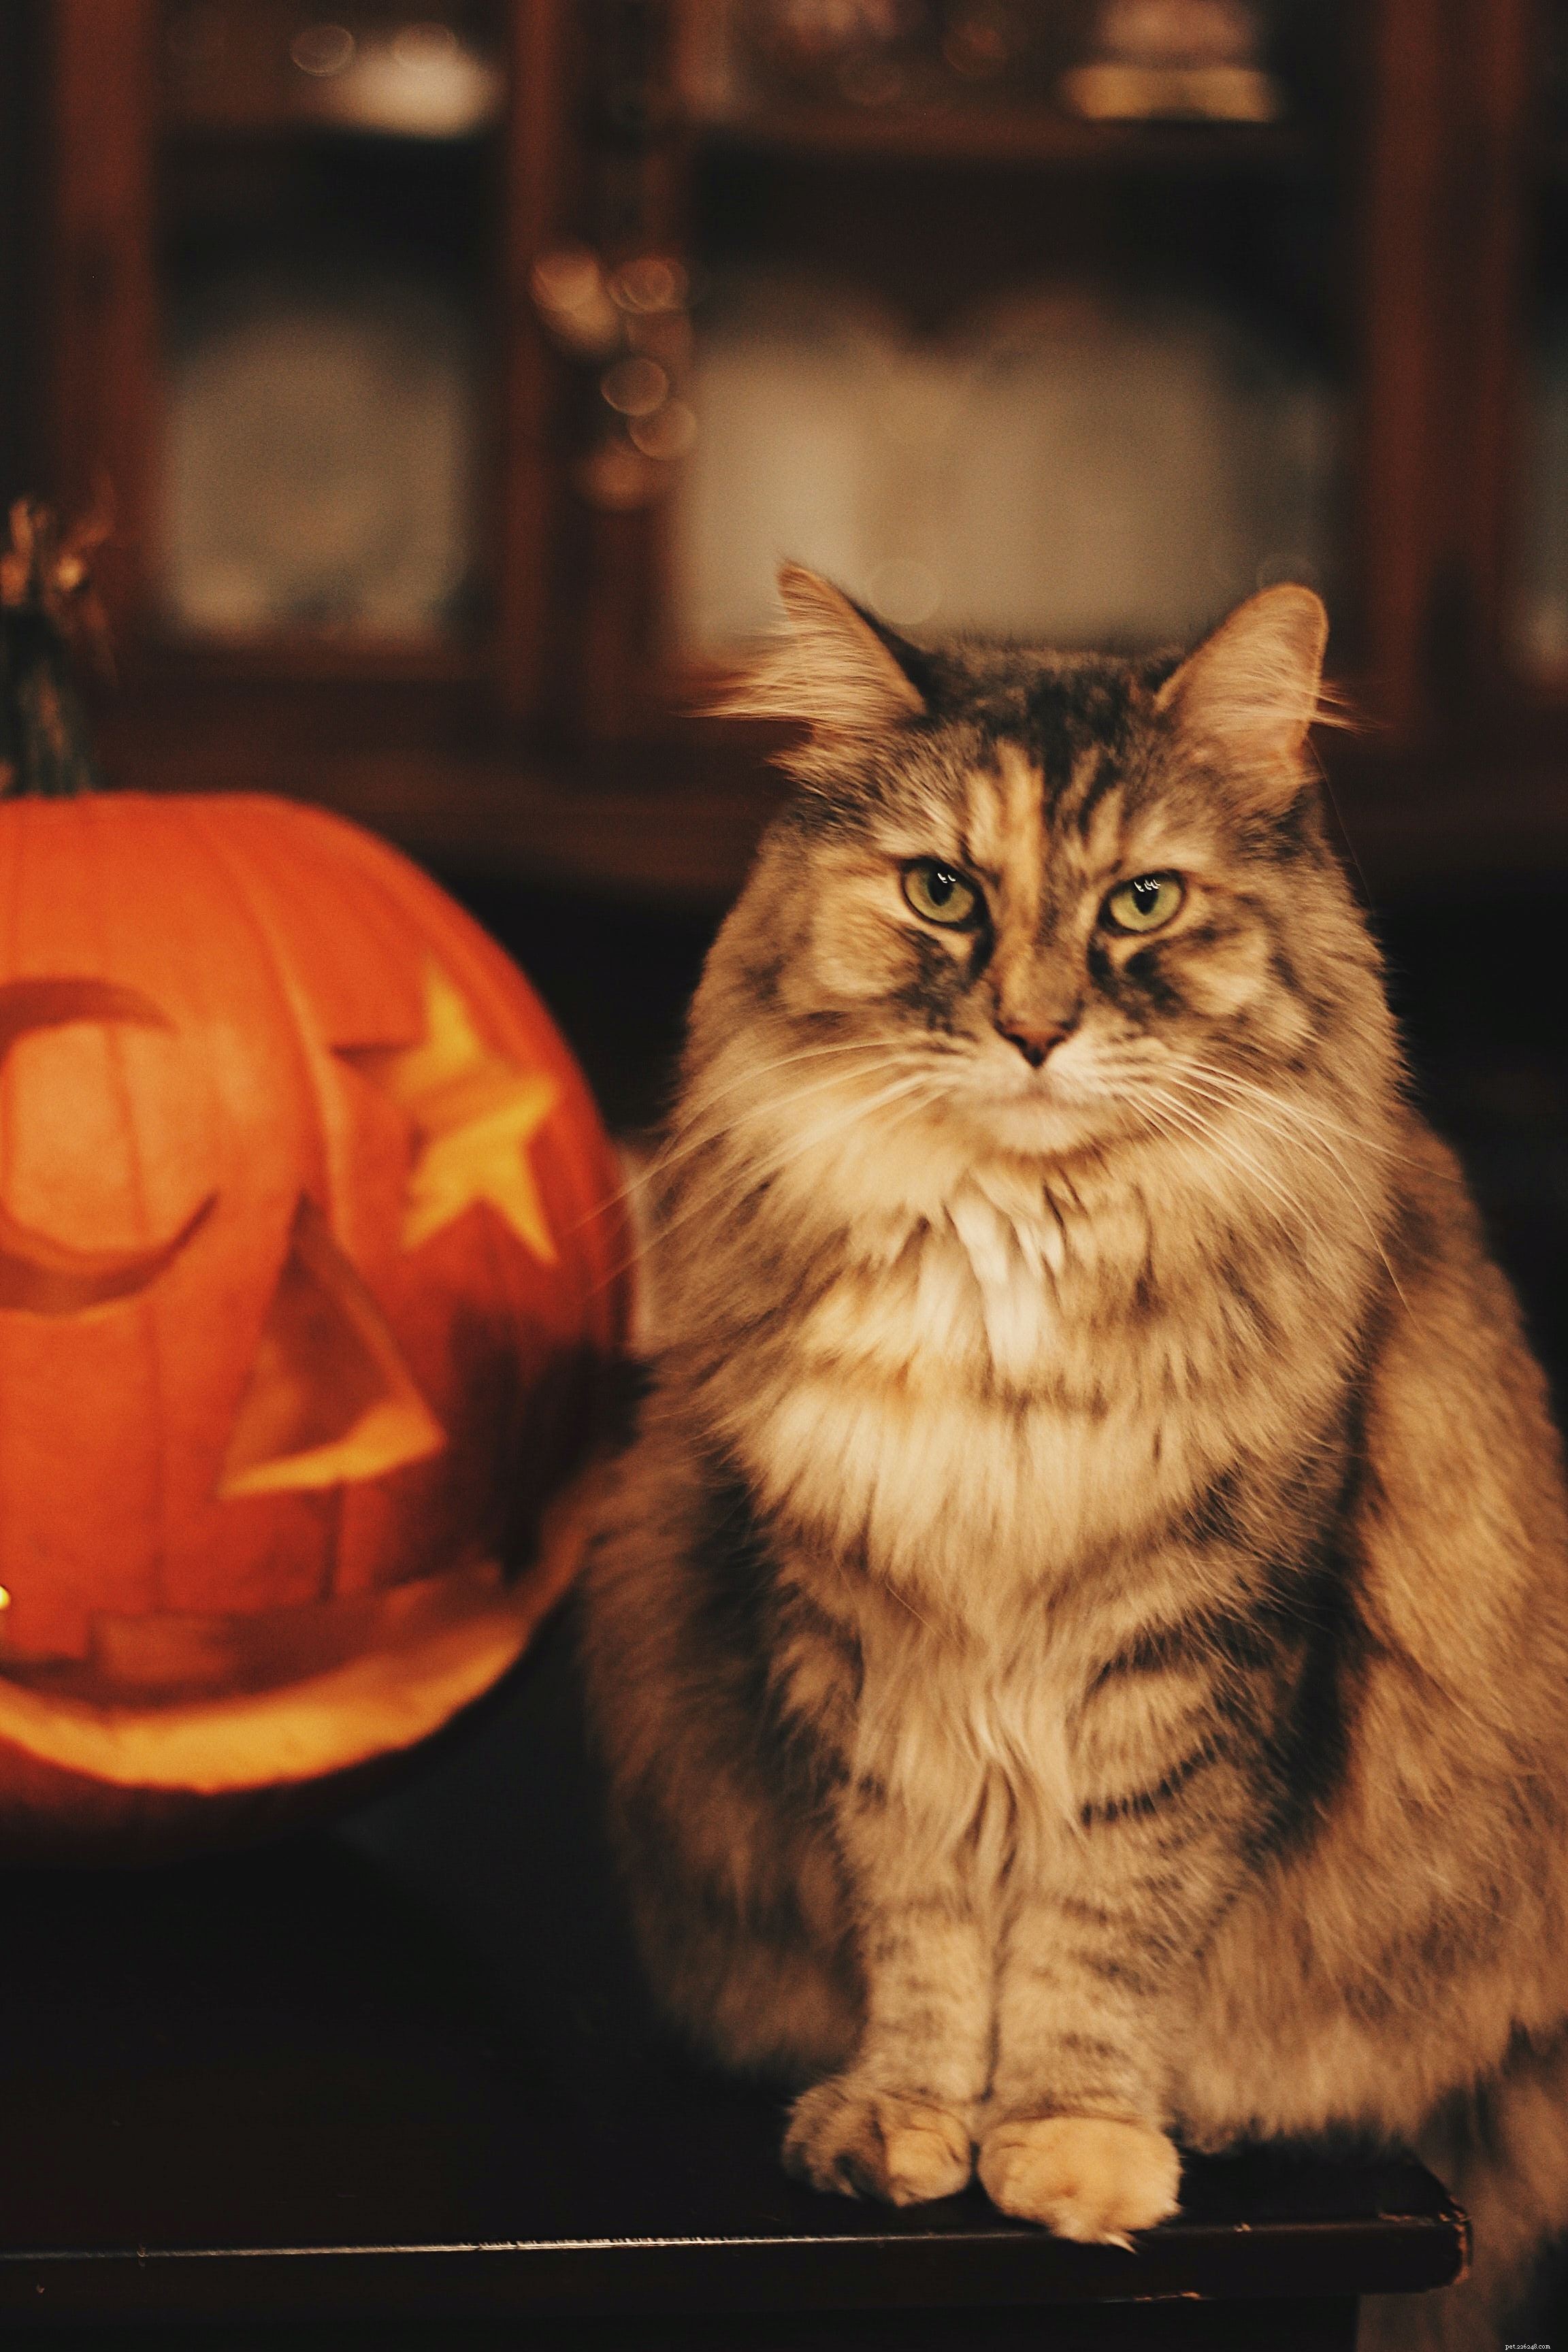 A temporada assustadora chegou, mas às vezes pode ser um pouco assustadora demais para o seu gato. Descubra nossas dicas para ter um Halloween seguro para gatos